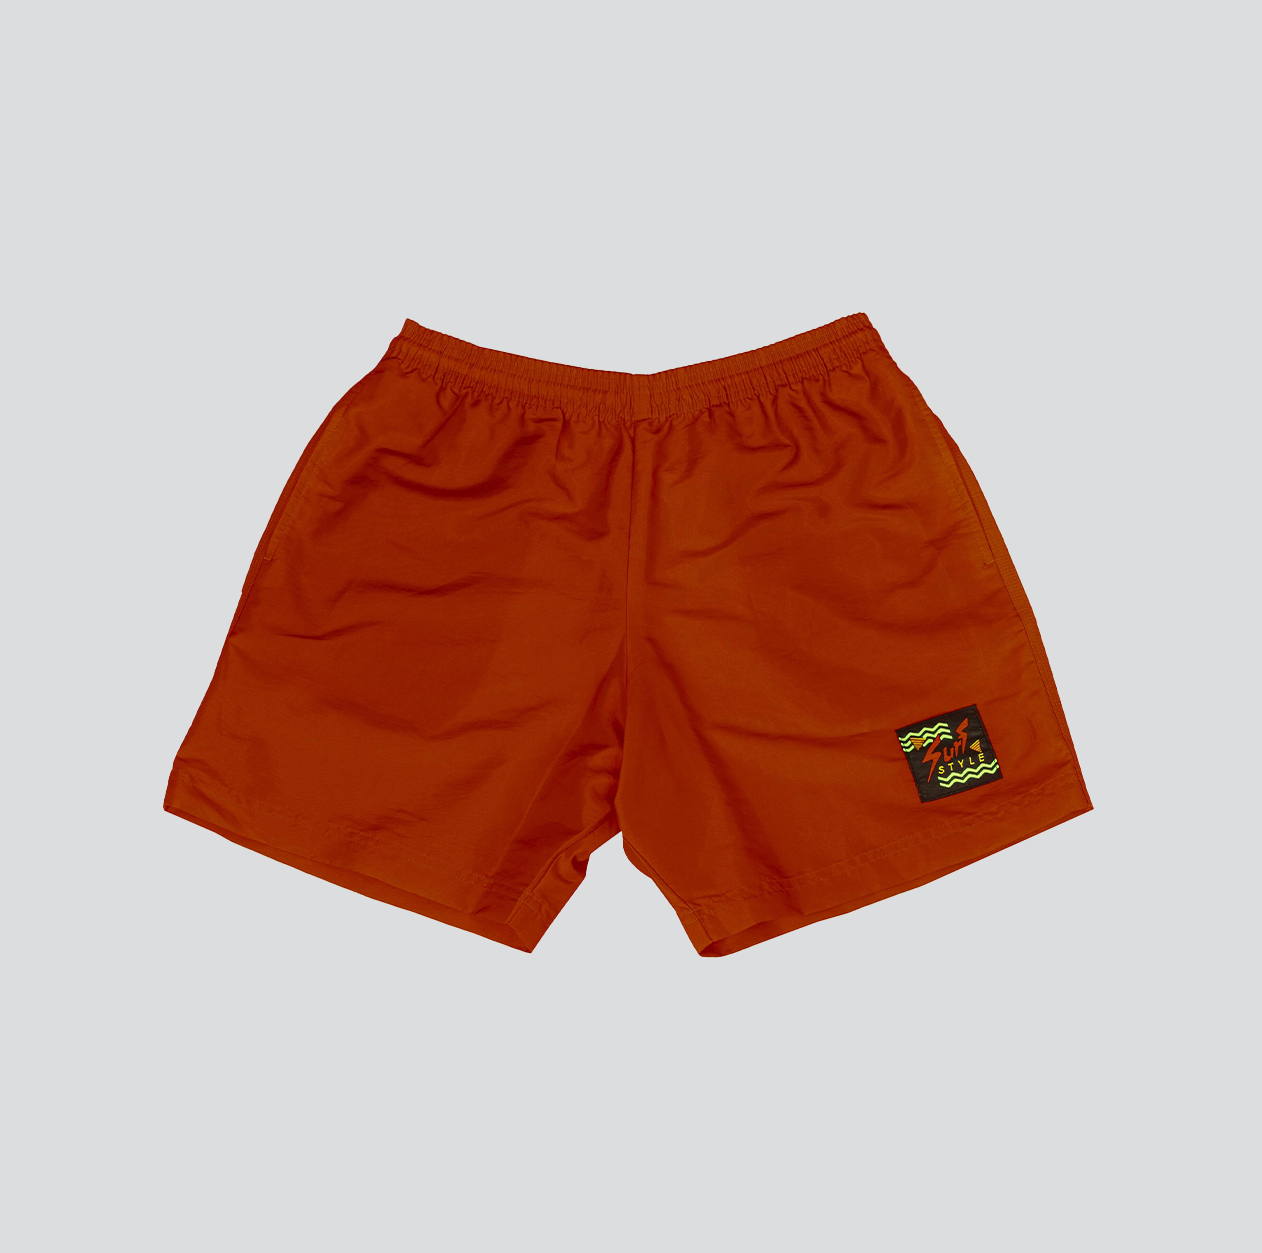 Shorts High Layered Orange - Base Sneakers - Tênis, Roupas